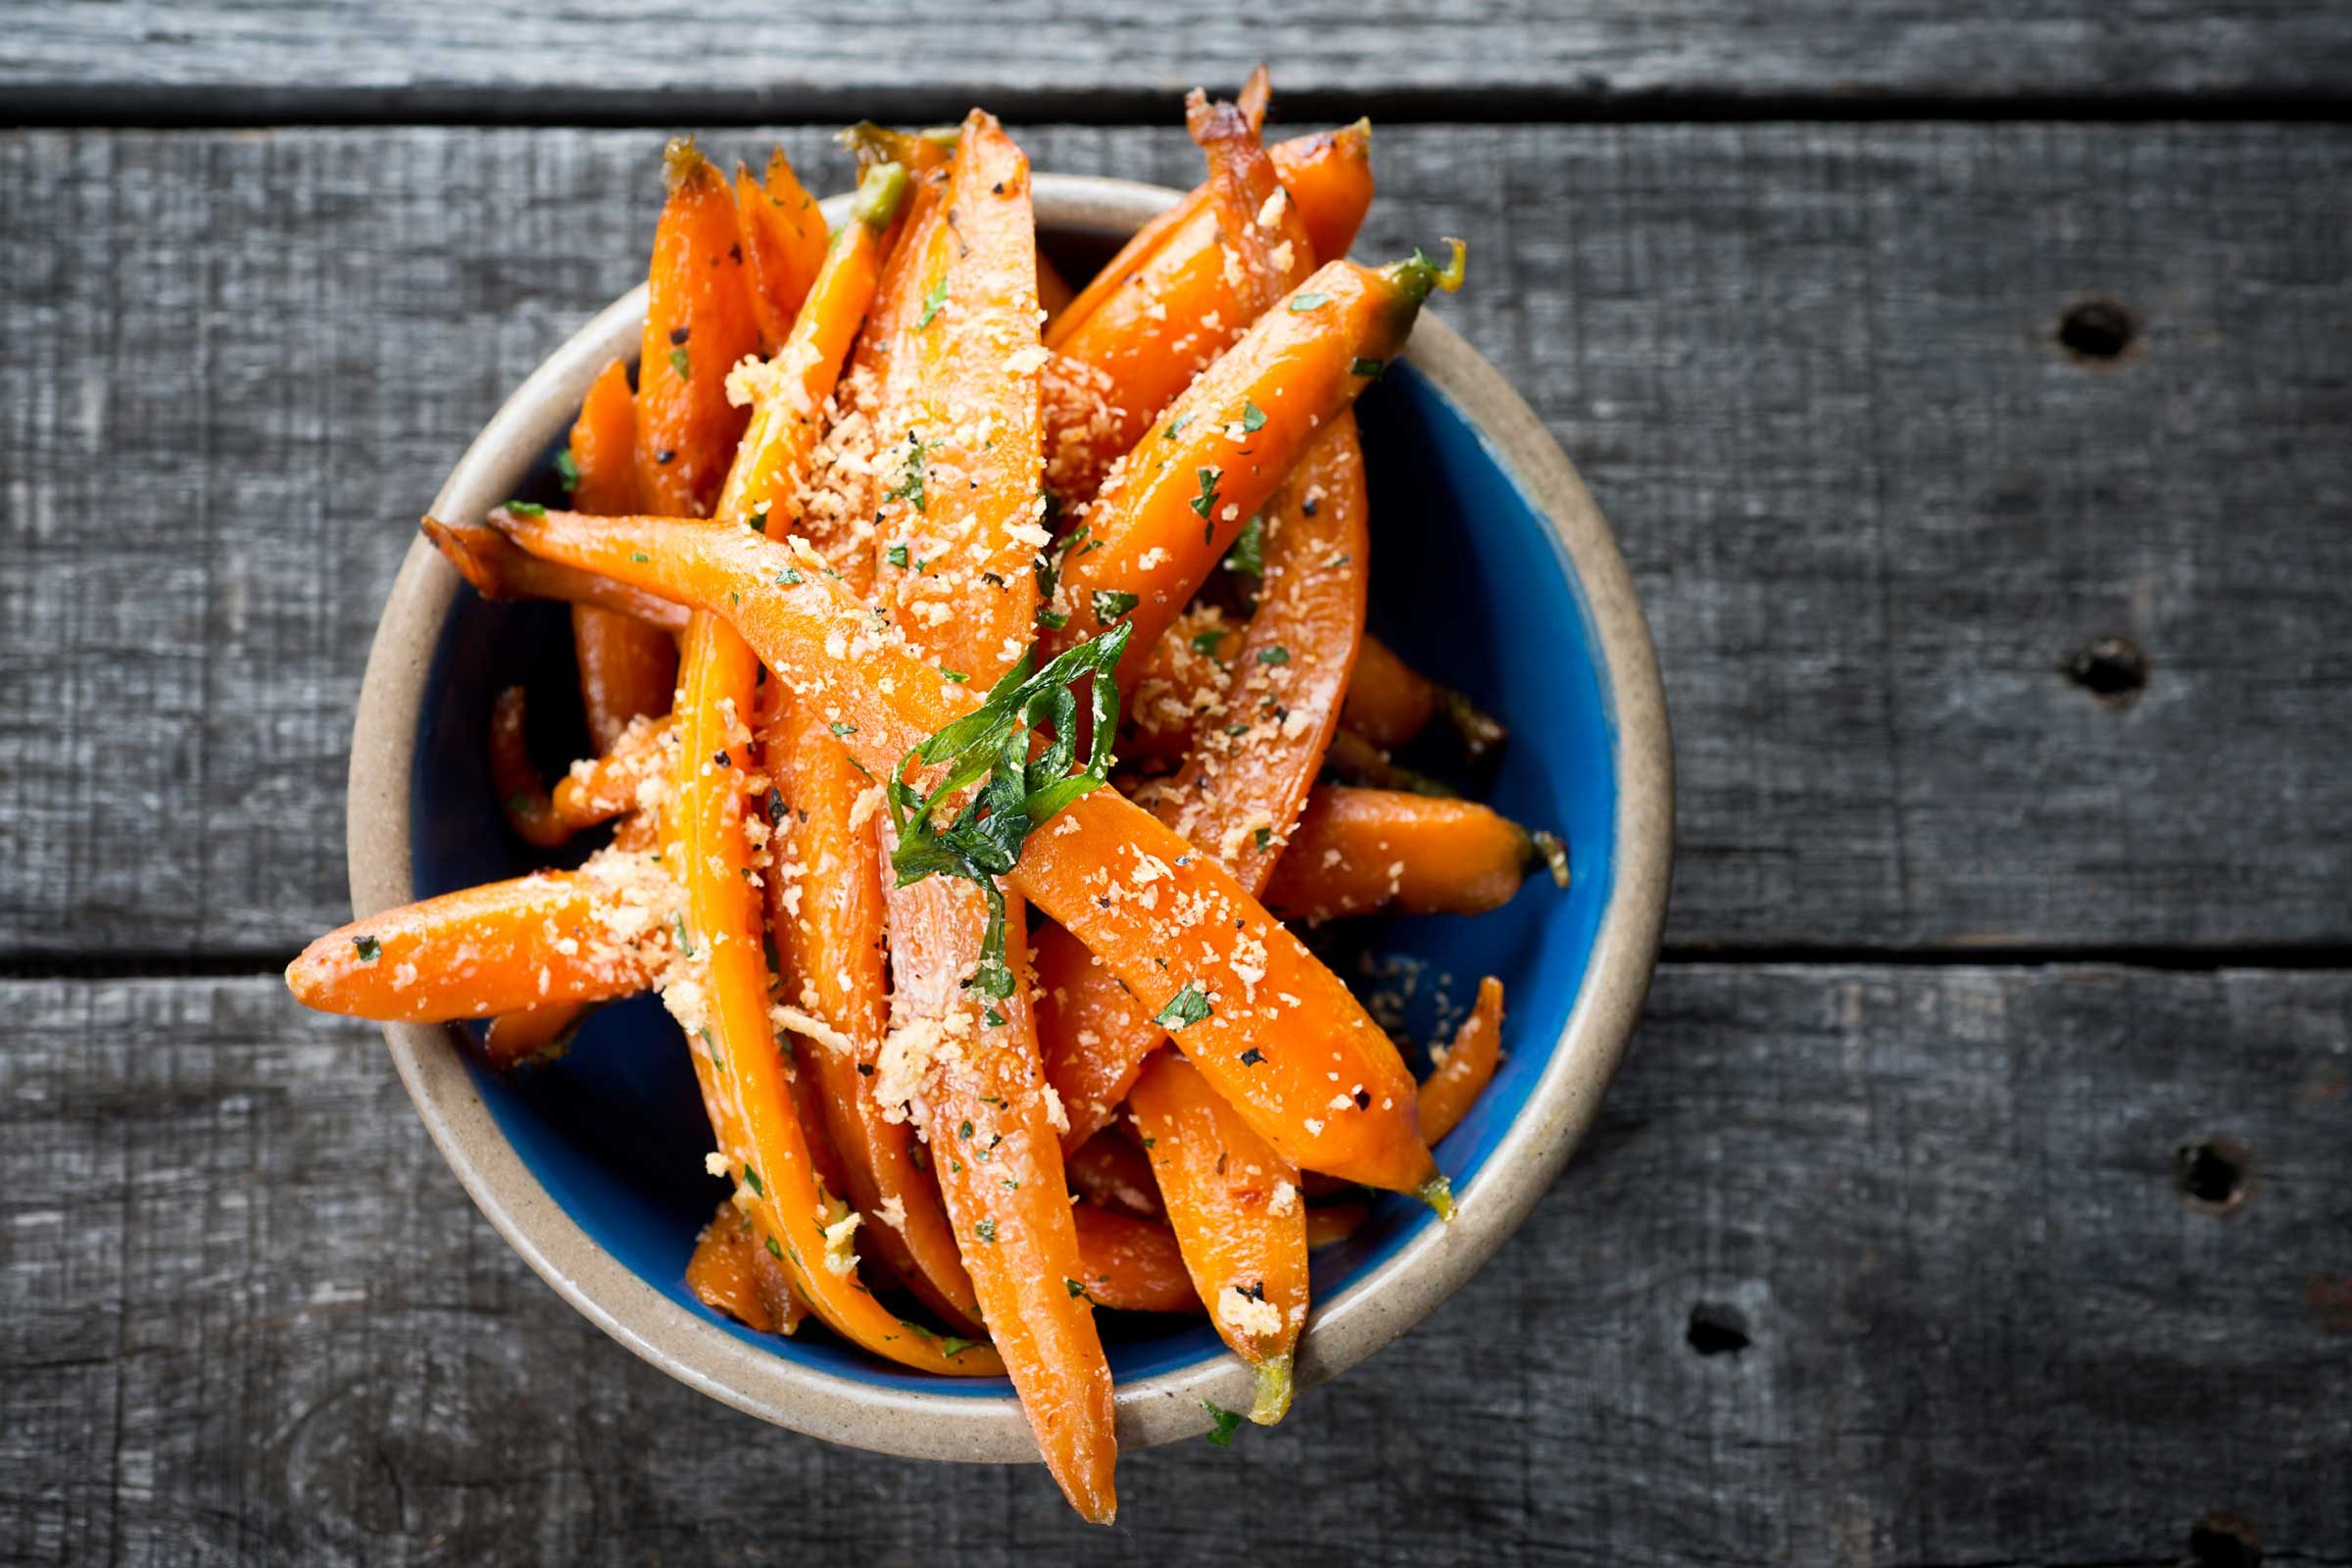 seasoned strips of carrots in a bowl